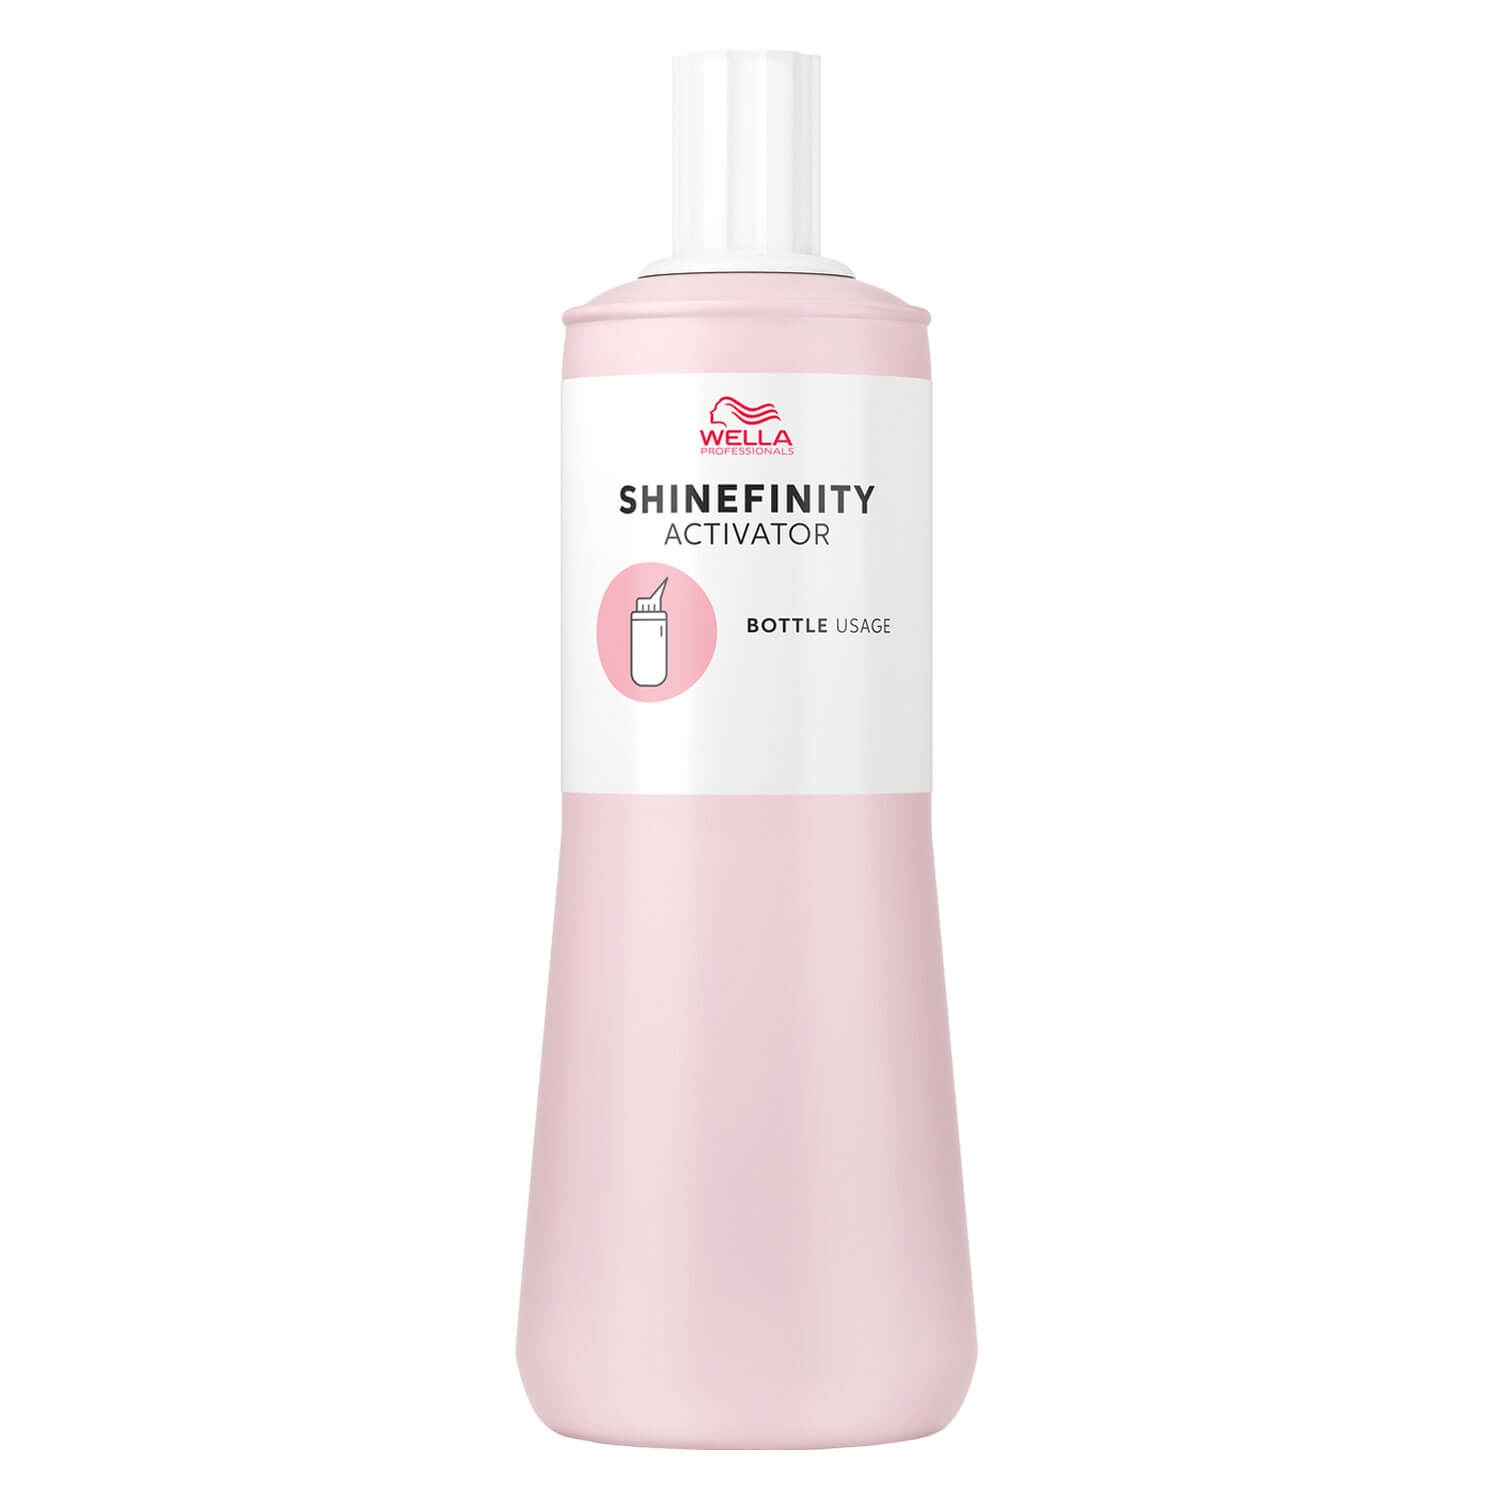 Product image from Shinefinity - Activator Bottle Usage 2%